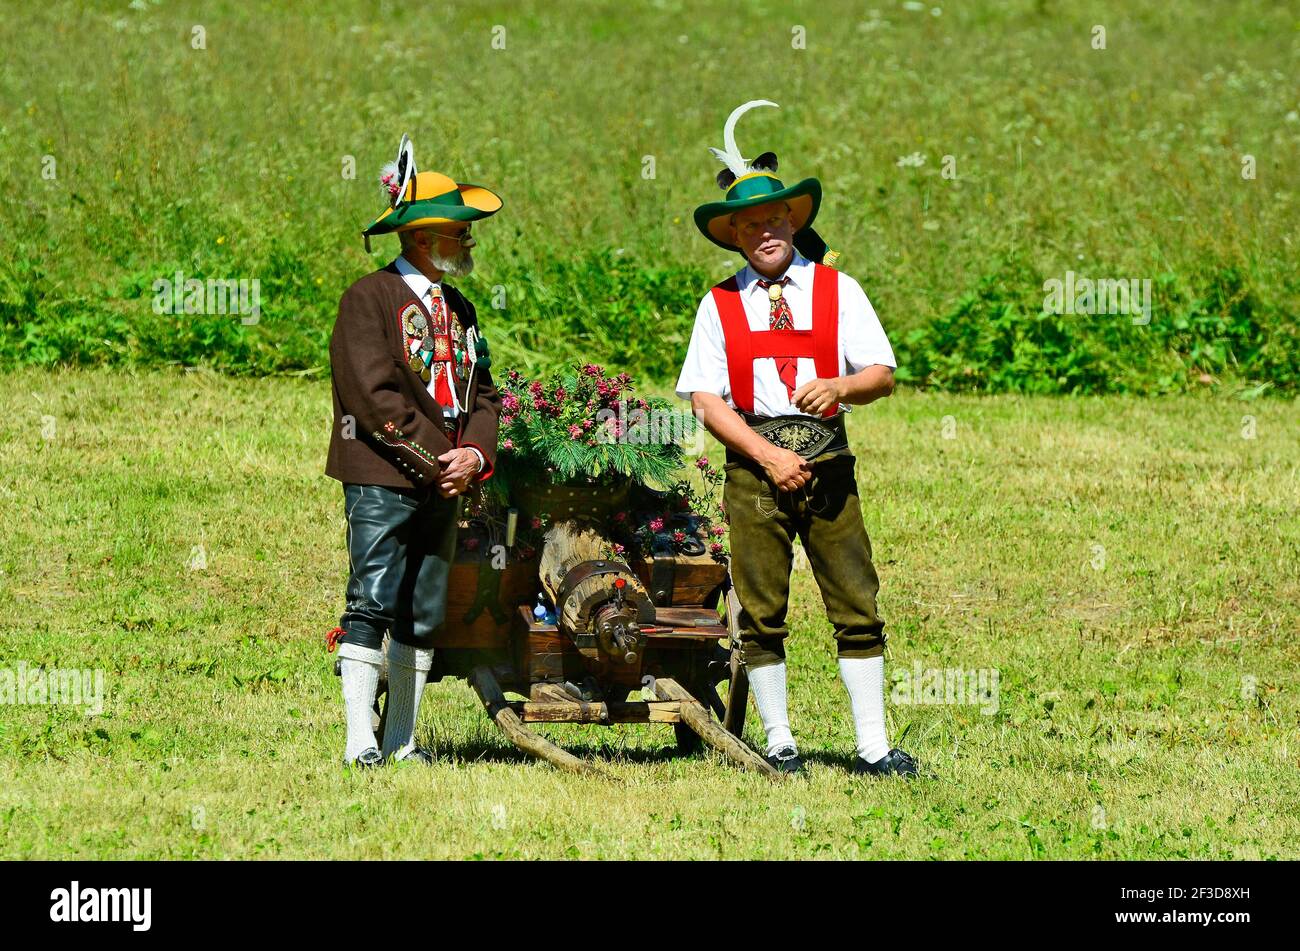 Feichten, Austria - 22 de junio de 2014: Dos hombres no identificados en traje tradicional con armas saltando armas de fuego por masa de campo en el Tirol Foto de stock